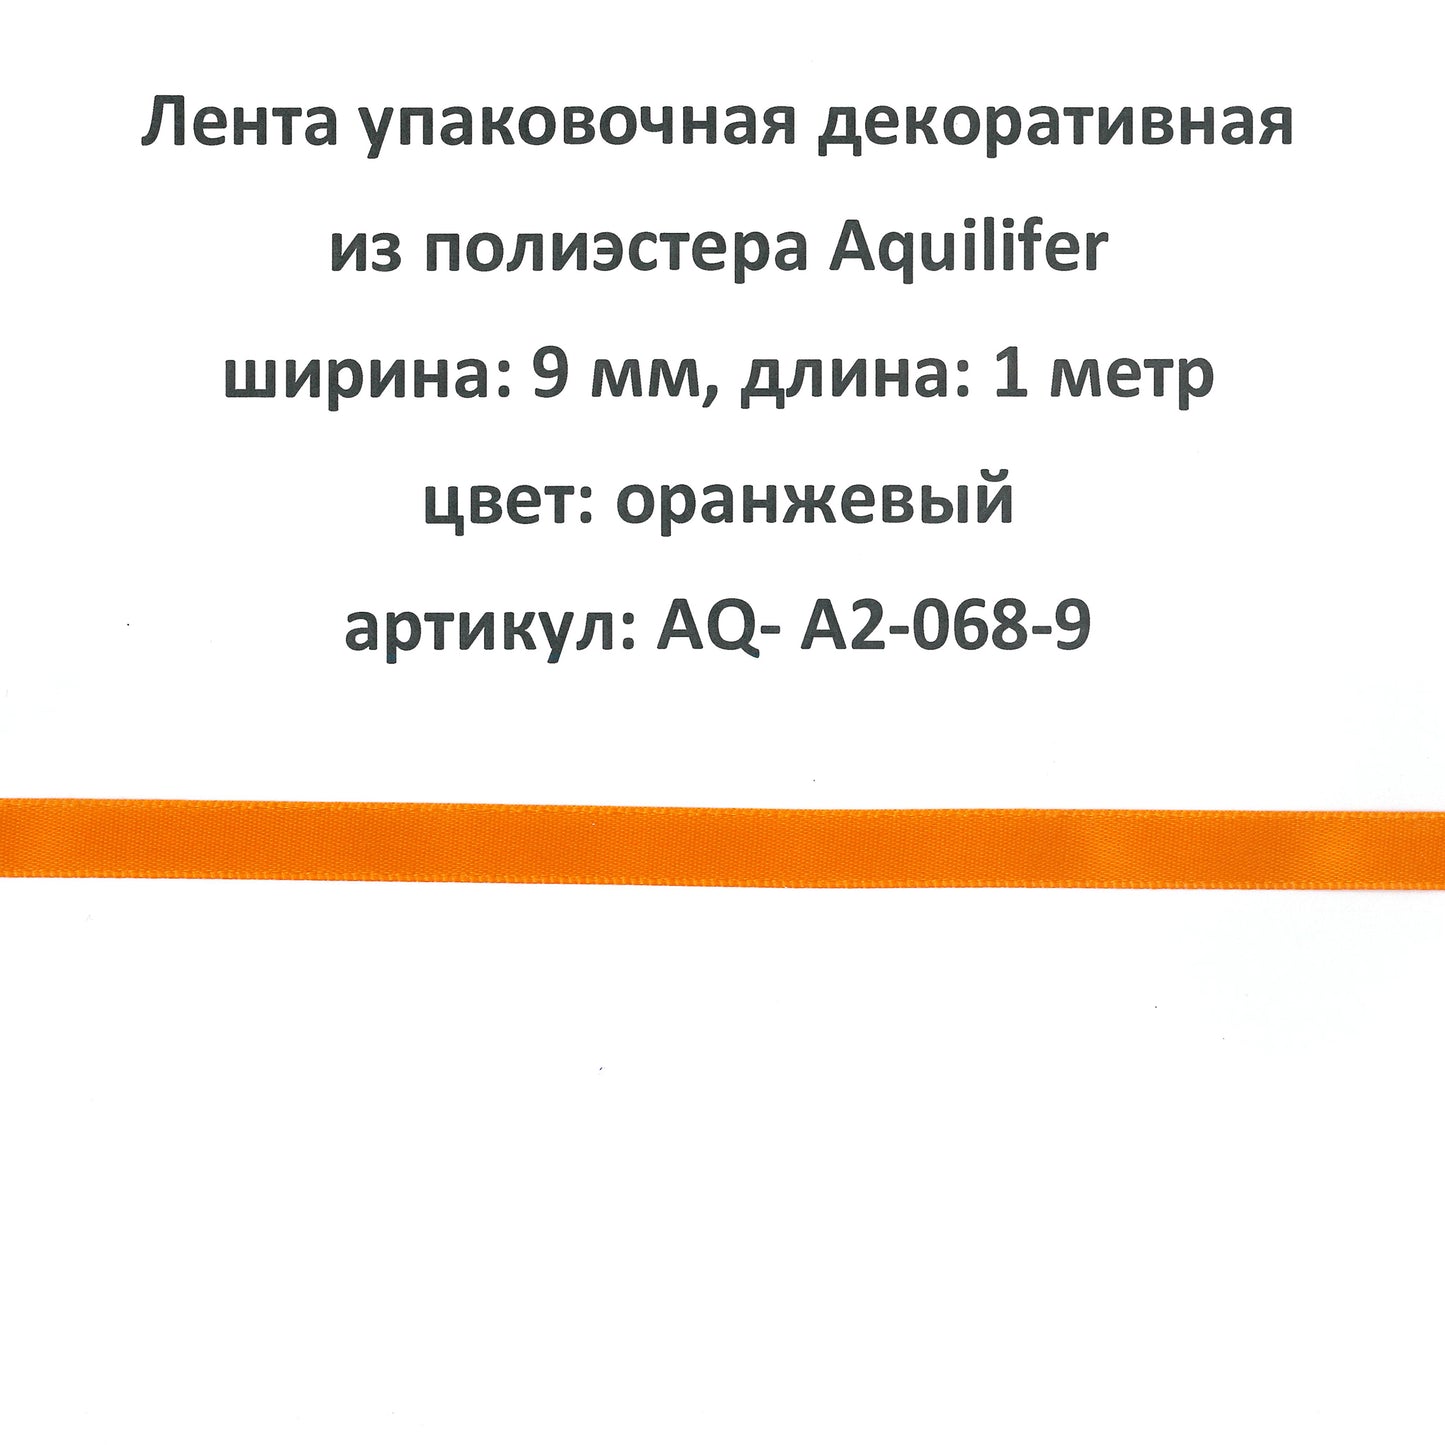 AQ-A2-068-9 - лента упаковочная декоративная из полиэстера Aquilifer, ширина: 9 мм, длина: 1 метр, цвет: оранжевый